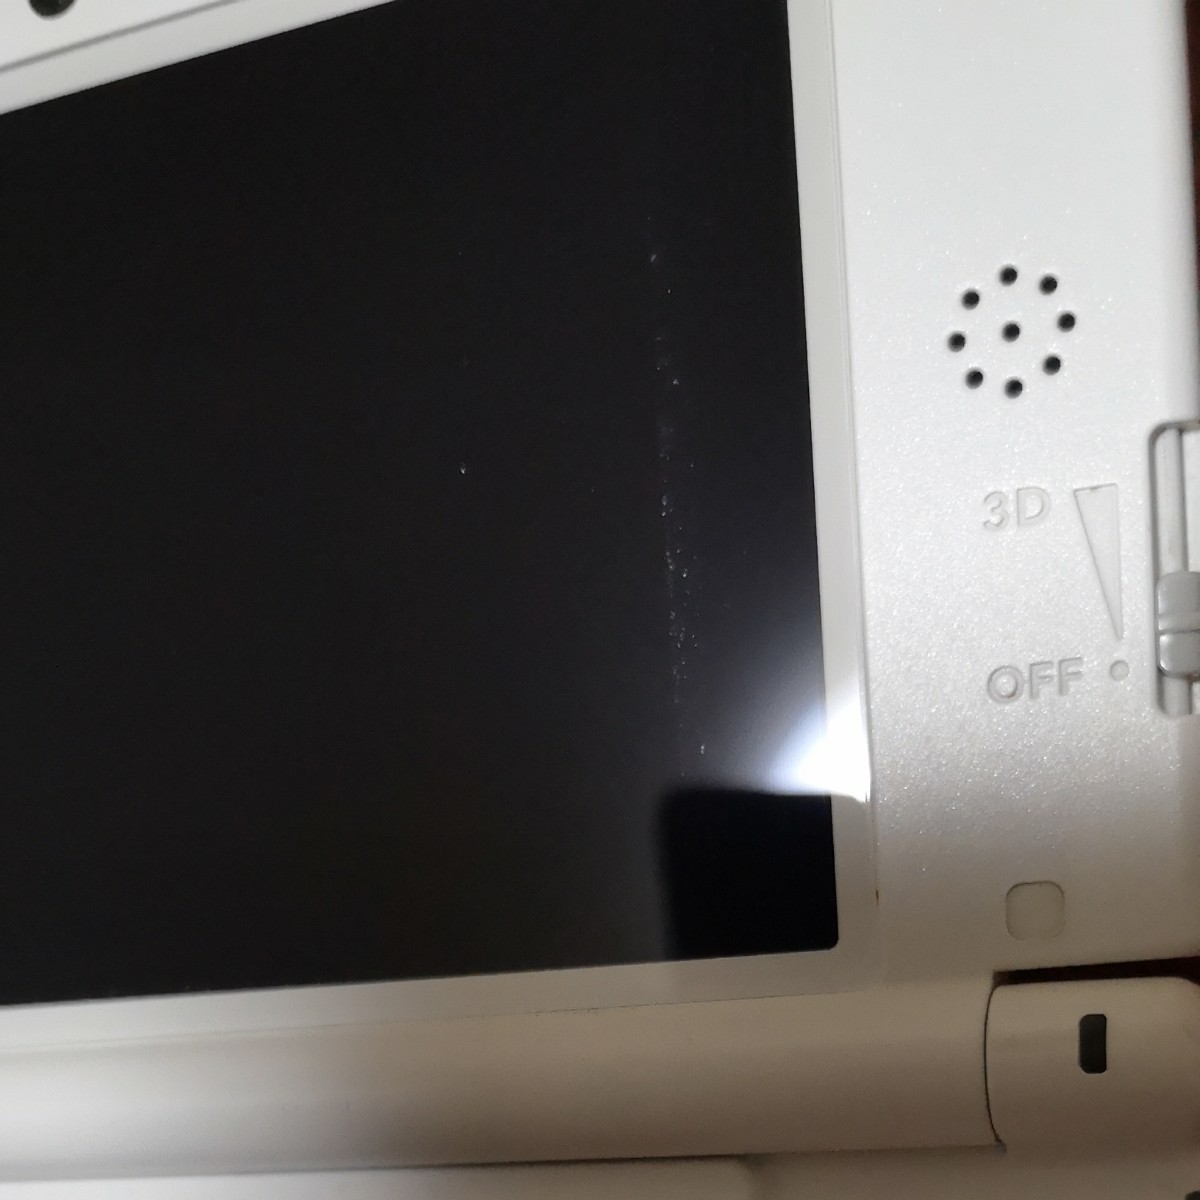 任天堂 ニンテンドー3DS LL Nintendo 3DS LL　ミント×ホワイト